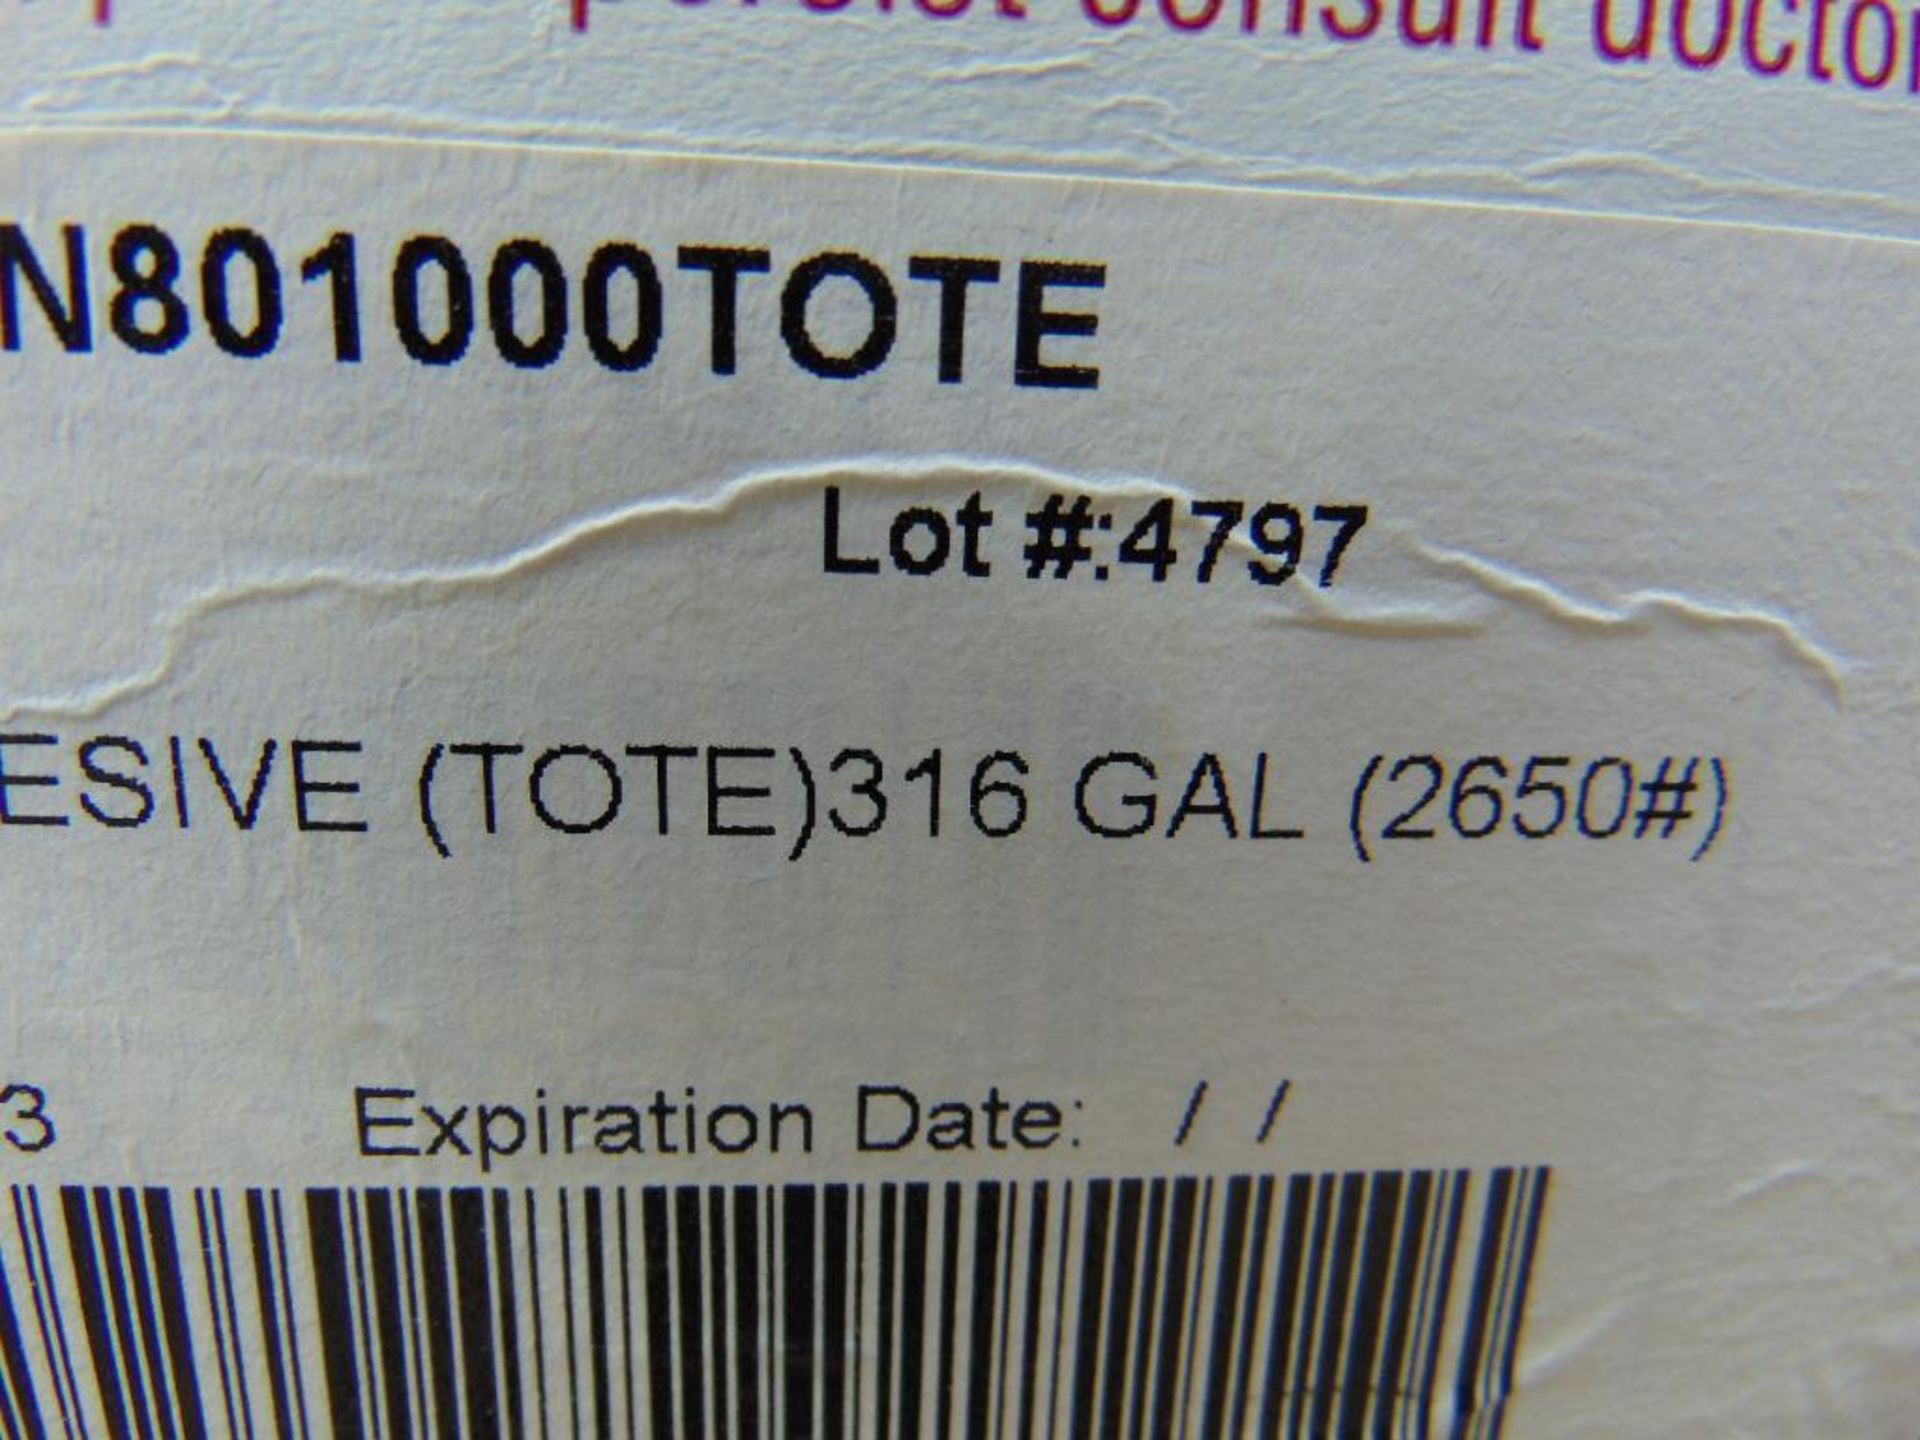 316 Gallon Tote - Image 6 of 8